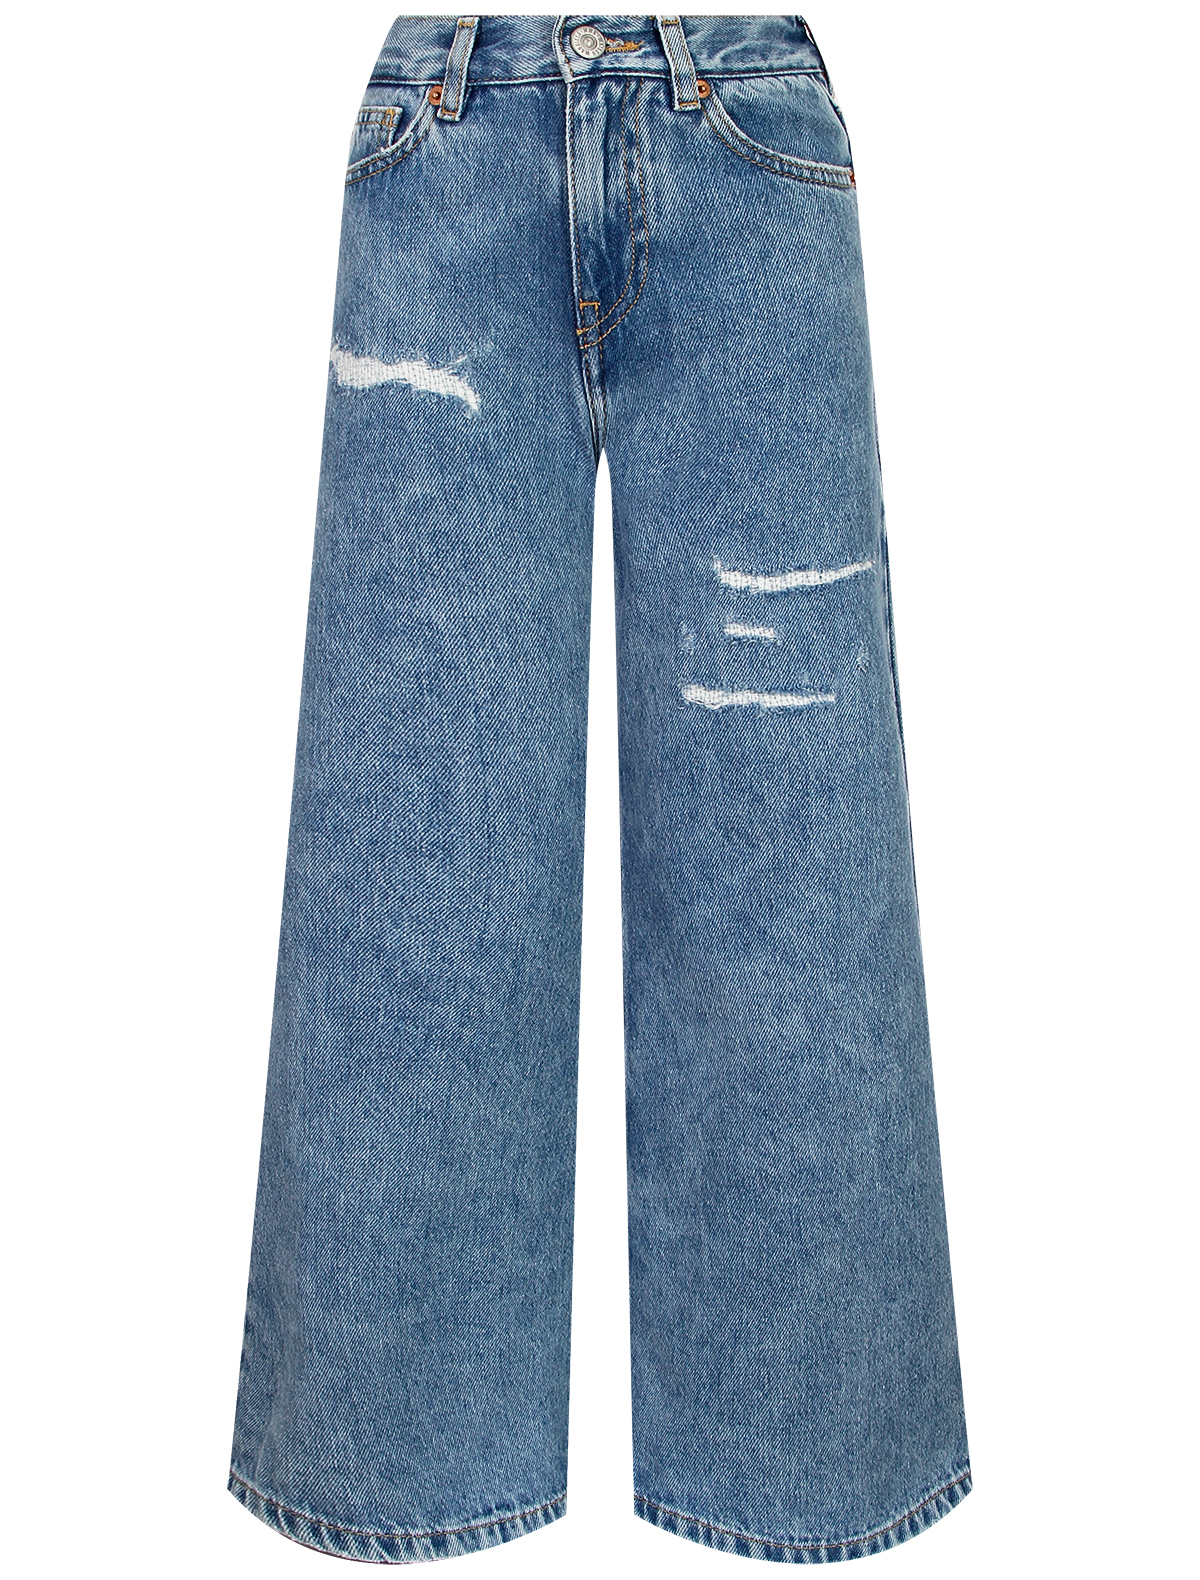 джинсы mm6 maison margiela для девочки, голубые